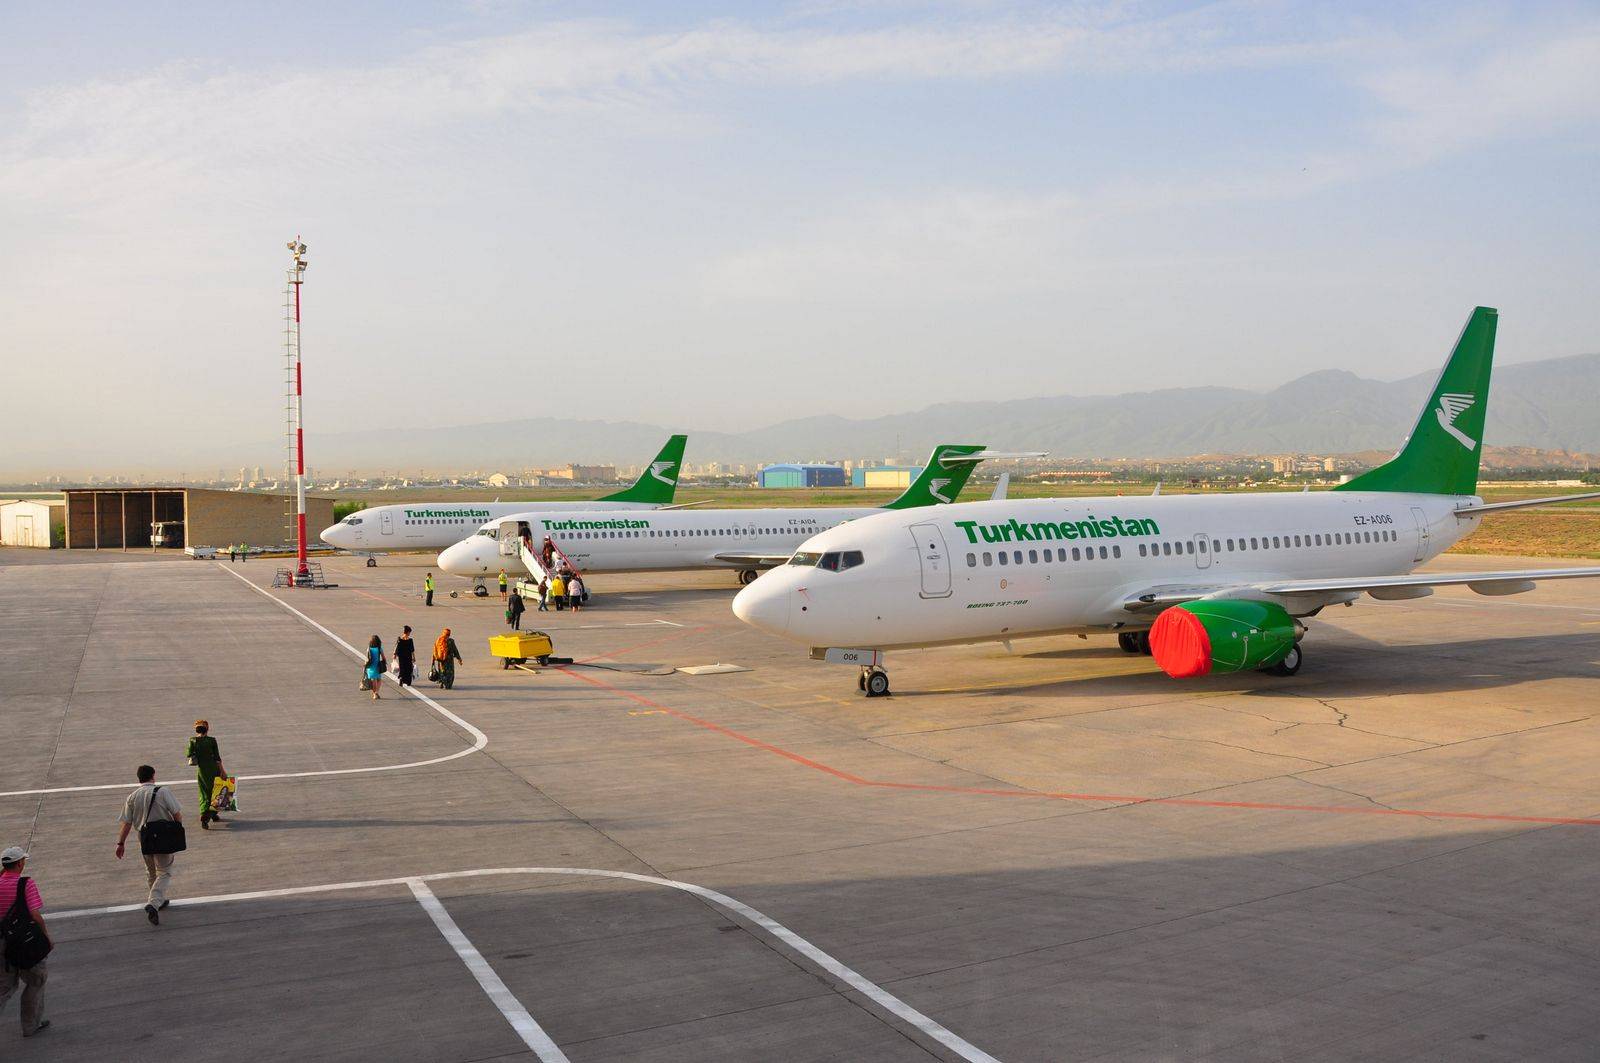 Все об официальном сайте авиакомпании turkmenistan airlines (t5 tua)